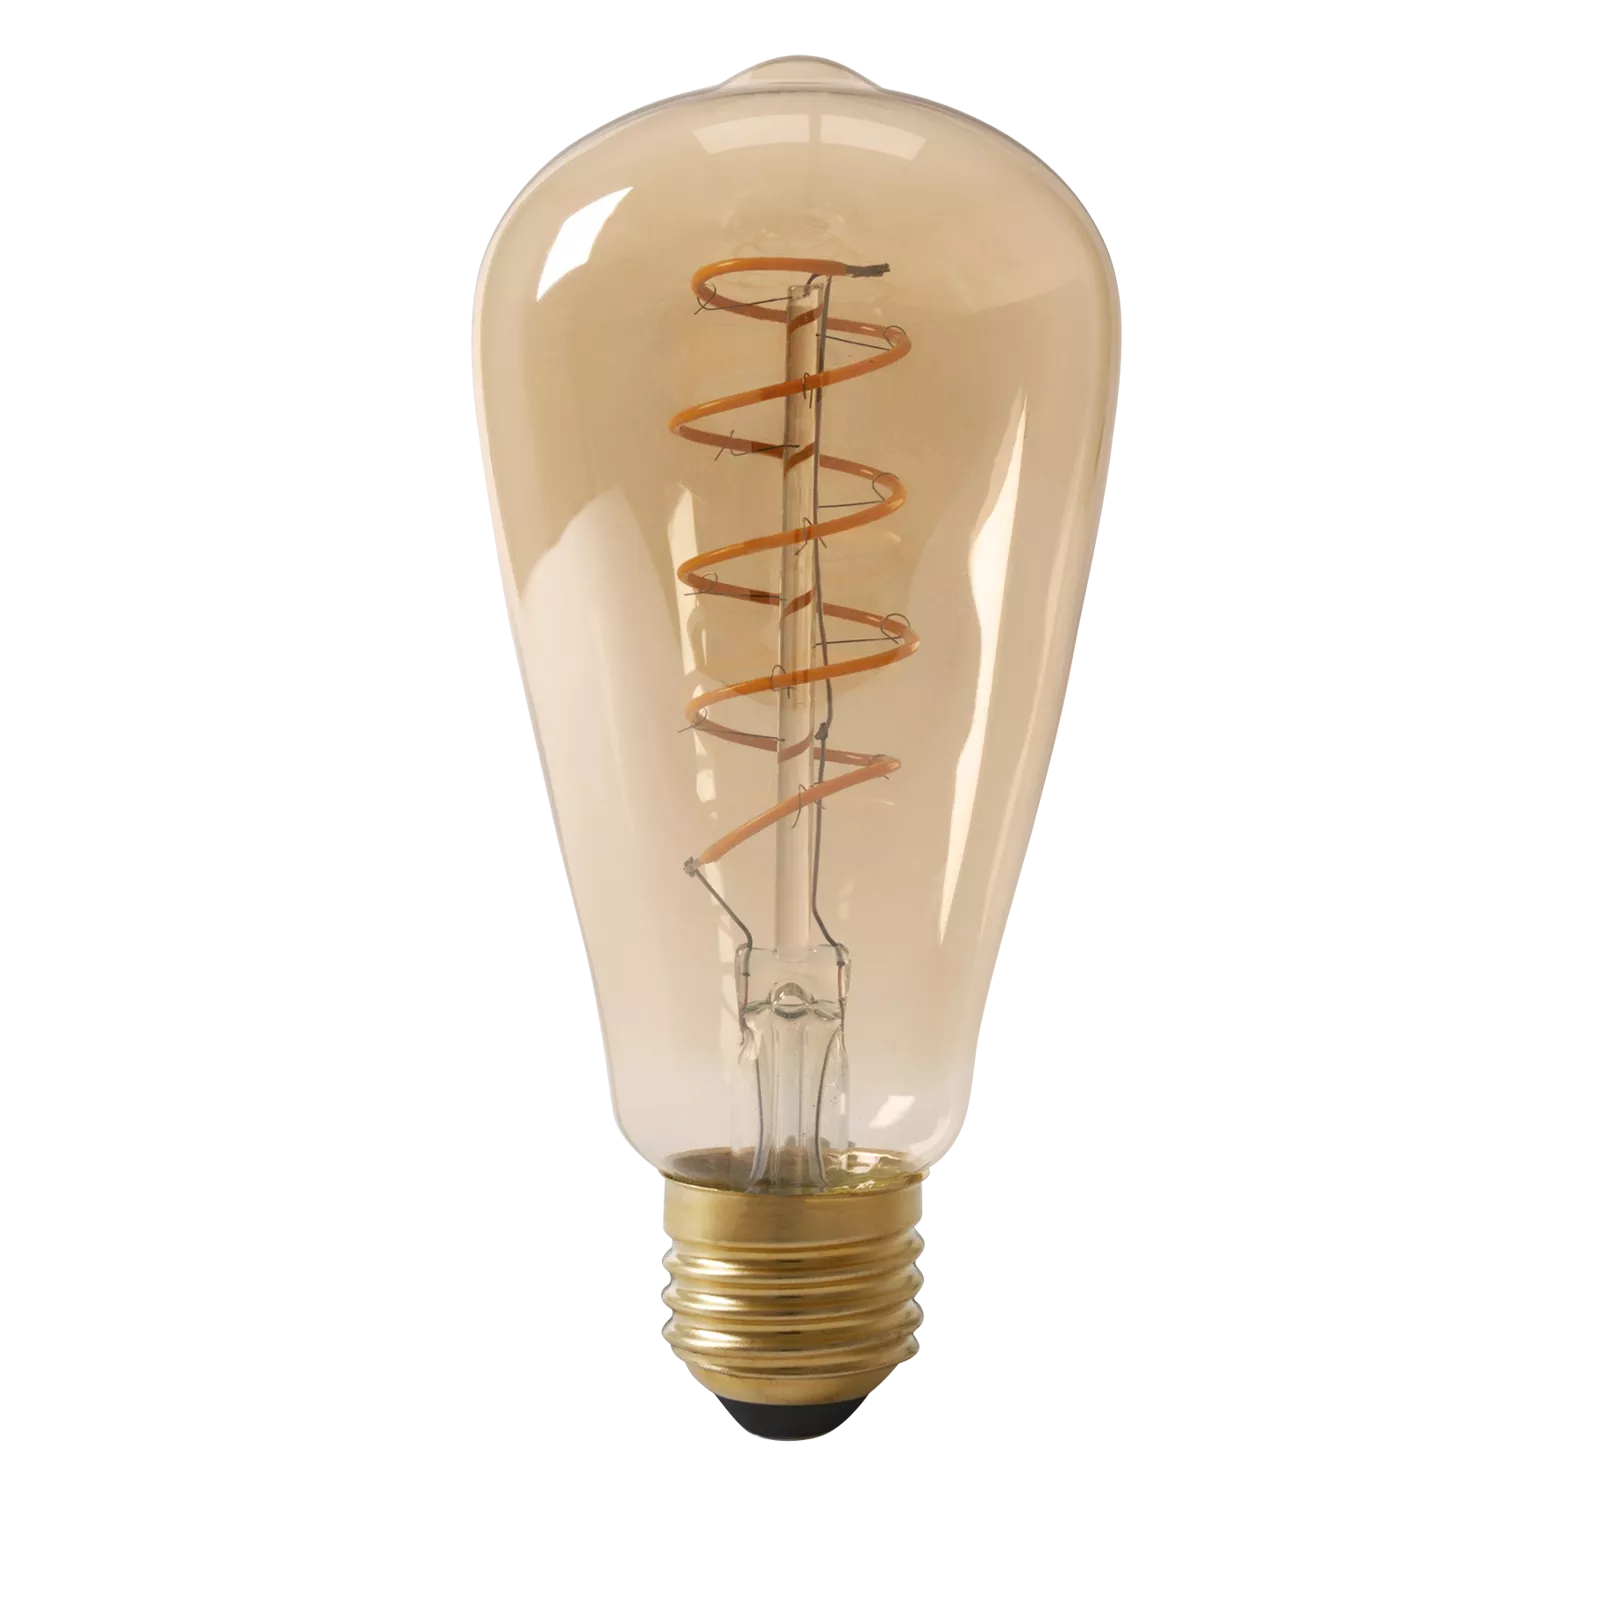 LED lamp Flex Rustic - Gold